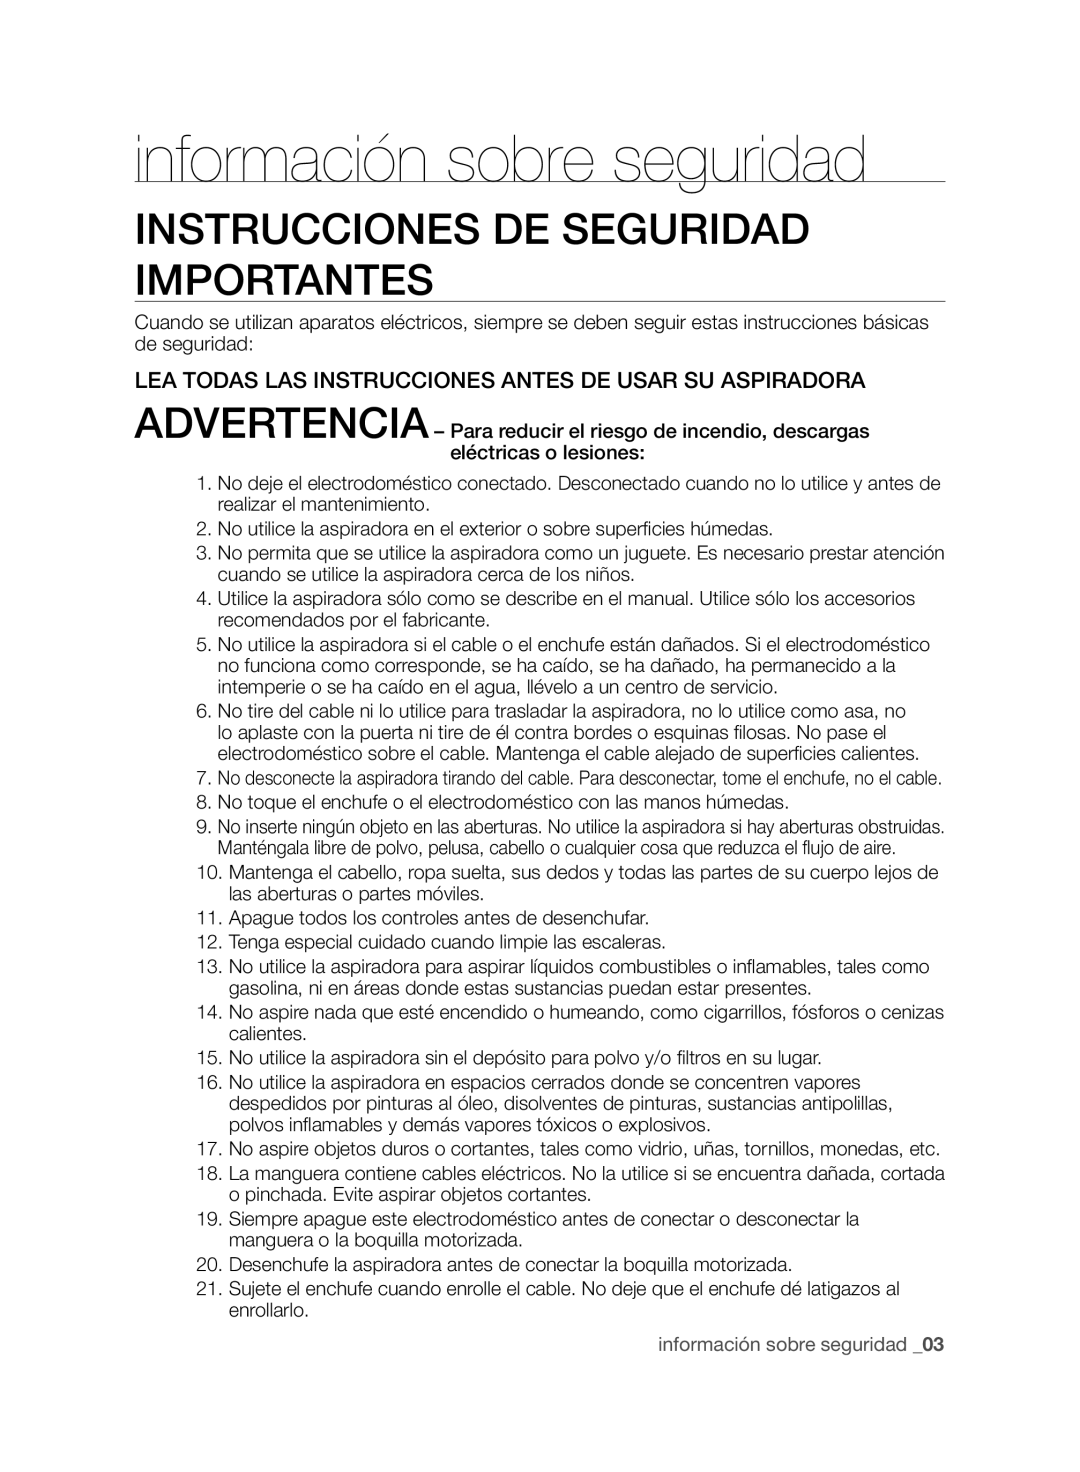 Samsung VCC96P0H1G user manual Instrucciones De Seguridad Importantes, información sobre seguridad _03 